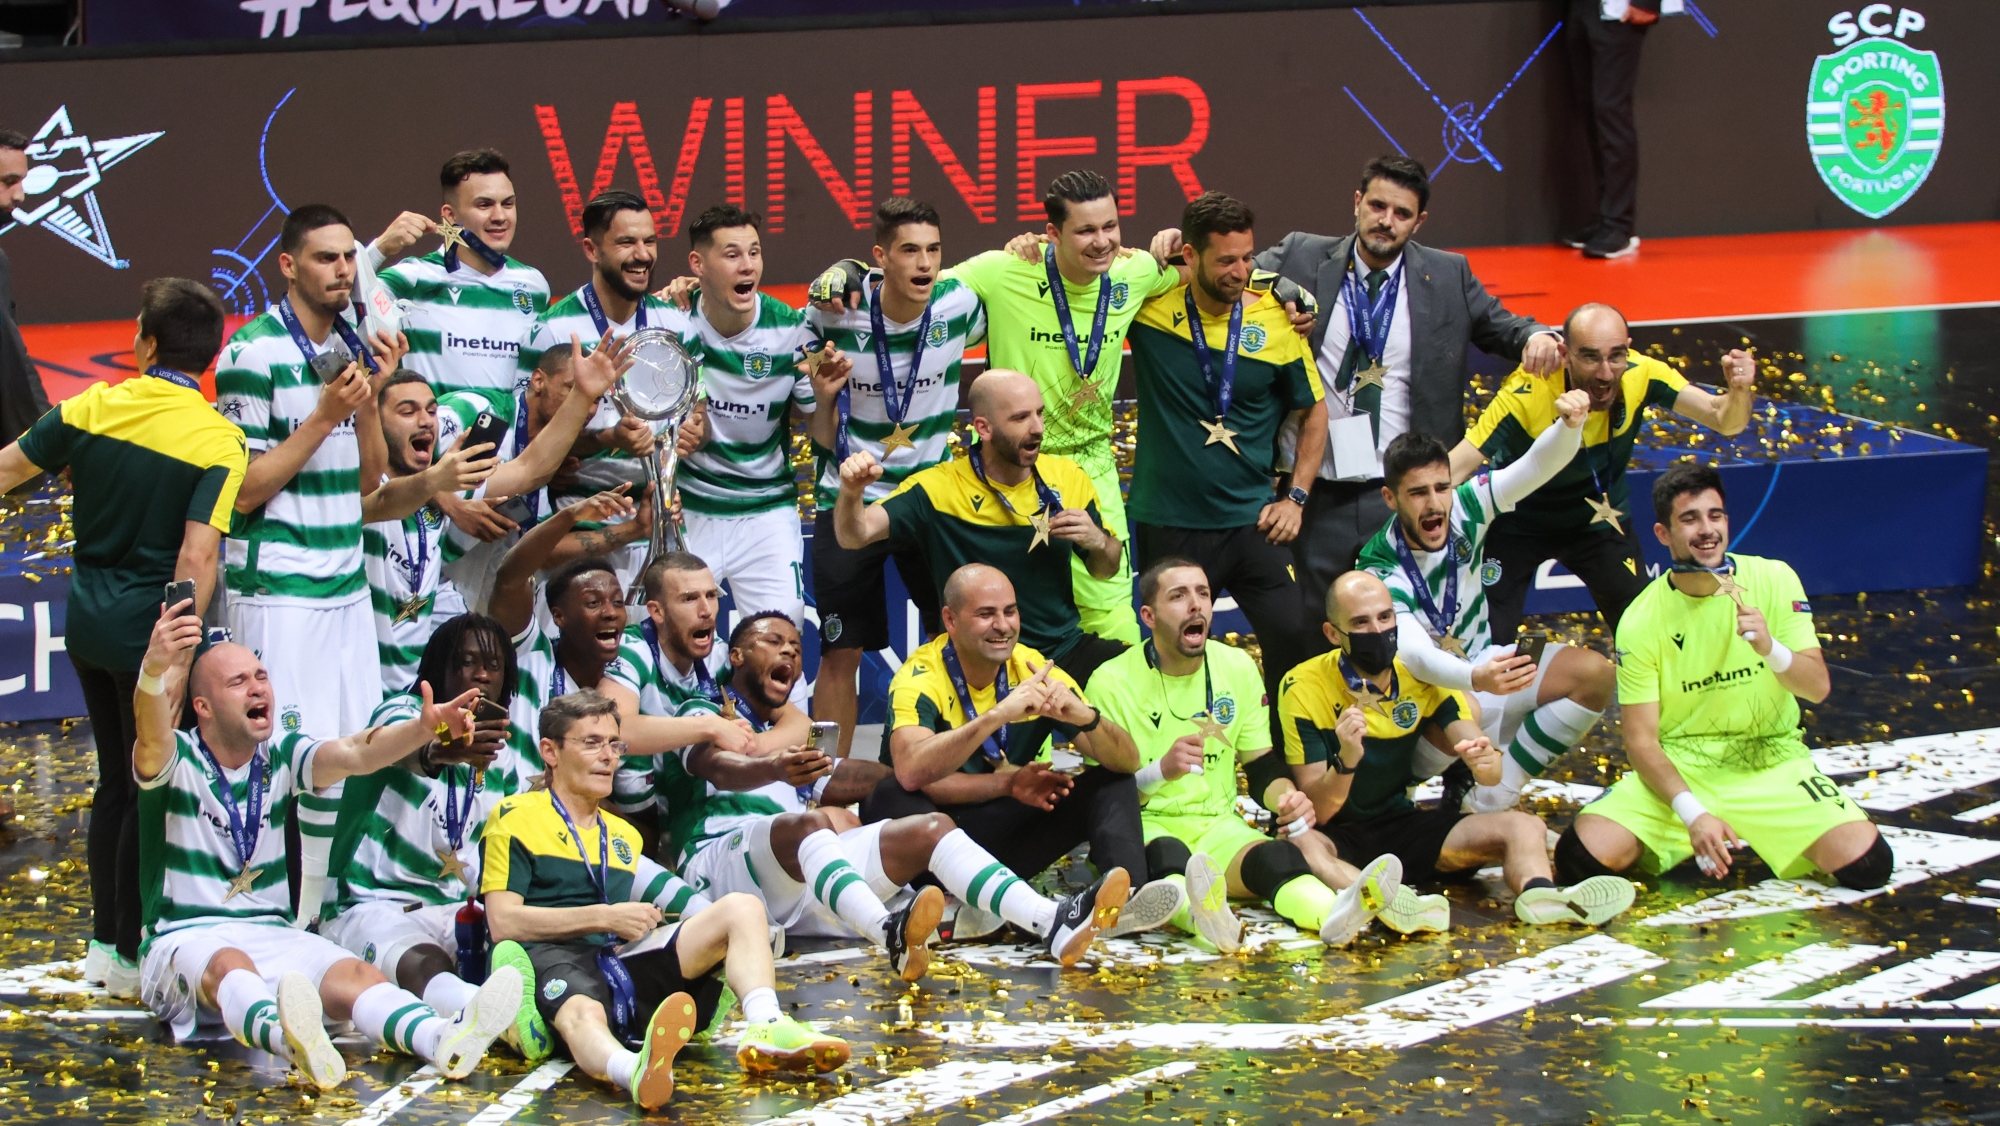 Futsal conseguiu conquistar a sua segunda Liga dos Campeões apenas em três anos depois da vitória por 4-3 frente ao Barcelona na Croácia